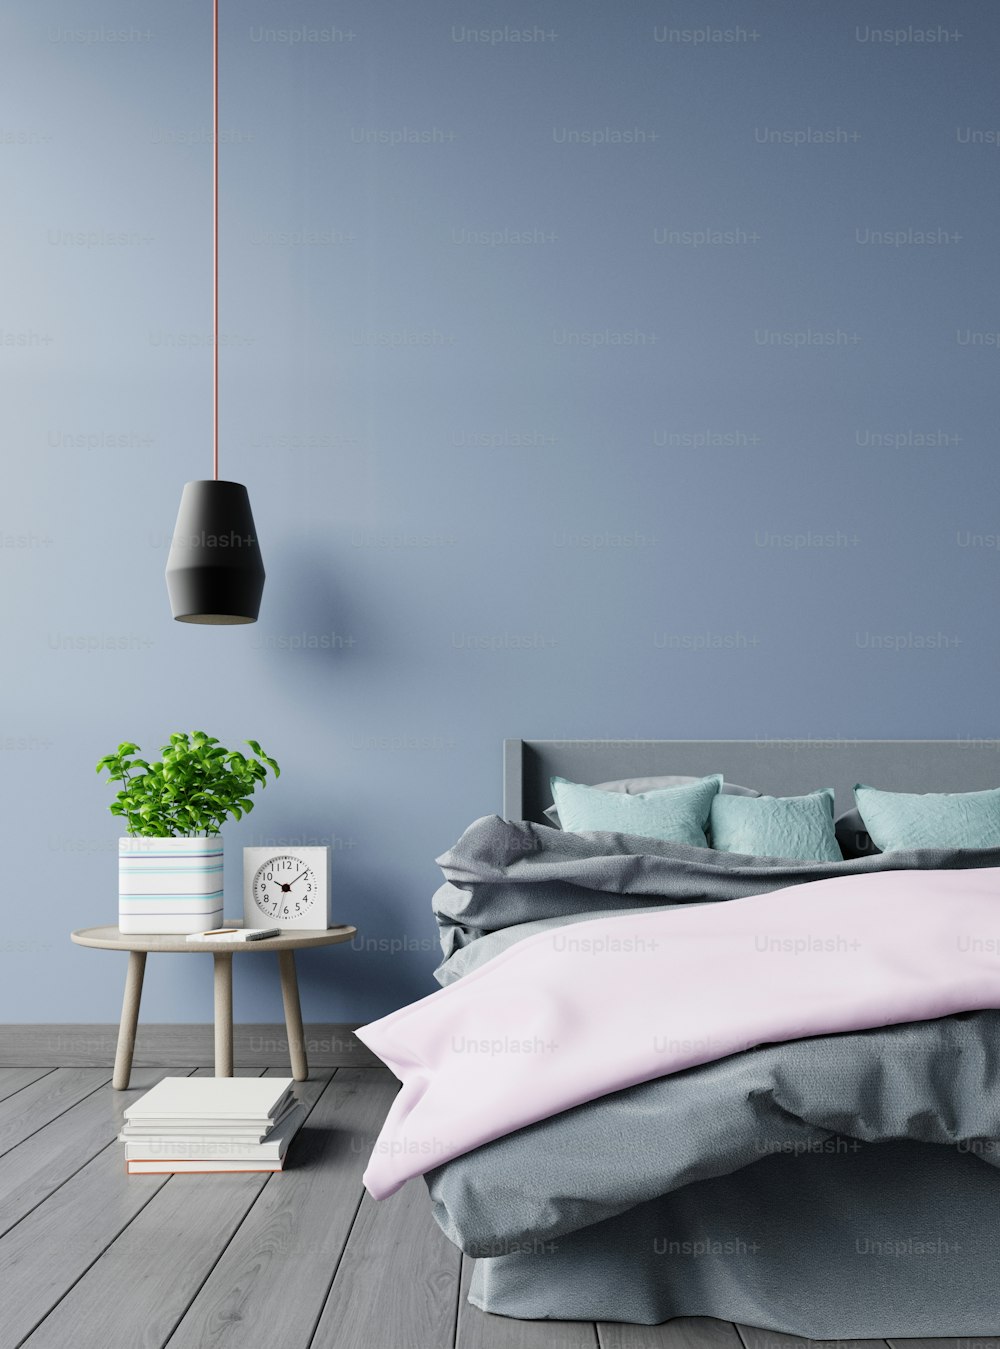 Interno della camera da letto con lampada da letto e piante verdi su sfondo scuro della parete, rendering 3d.